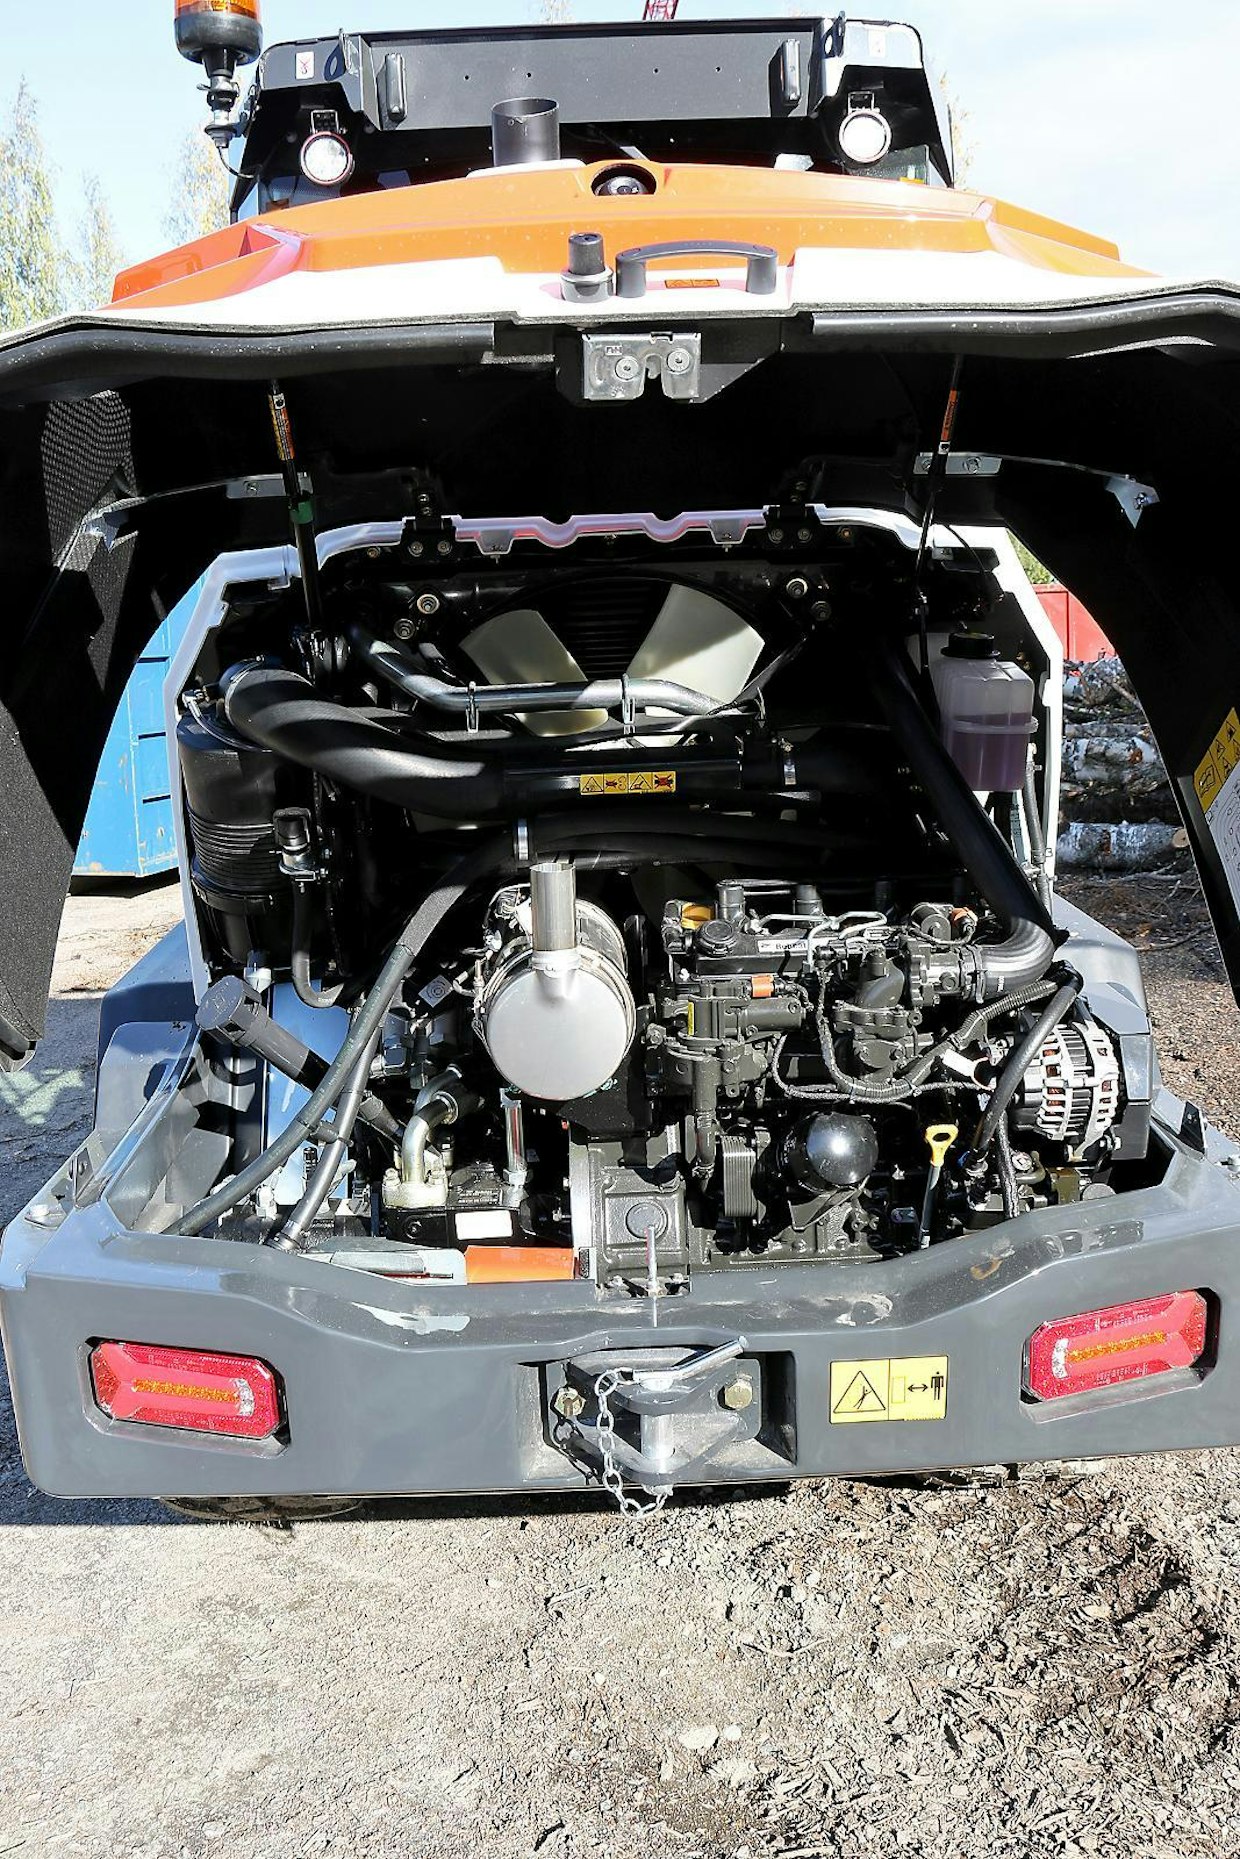 Bobcatin oma 50,7 kilowattinen moottori täyttää viimeisimmät päästömääräykset.